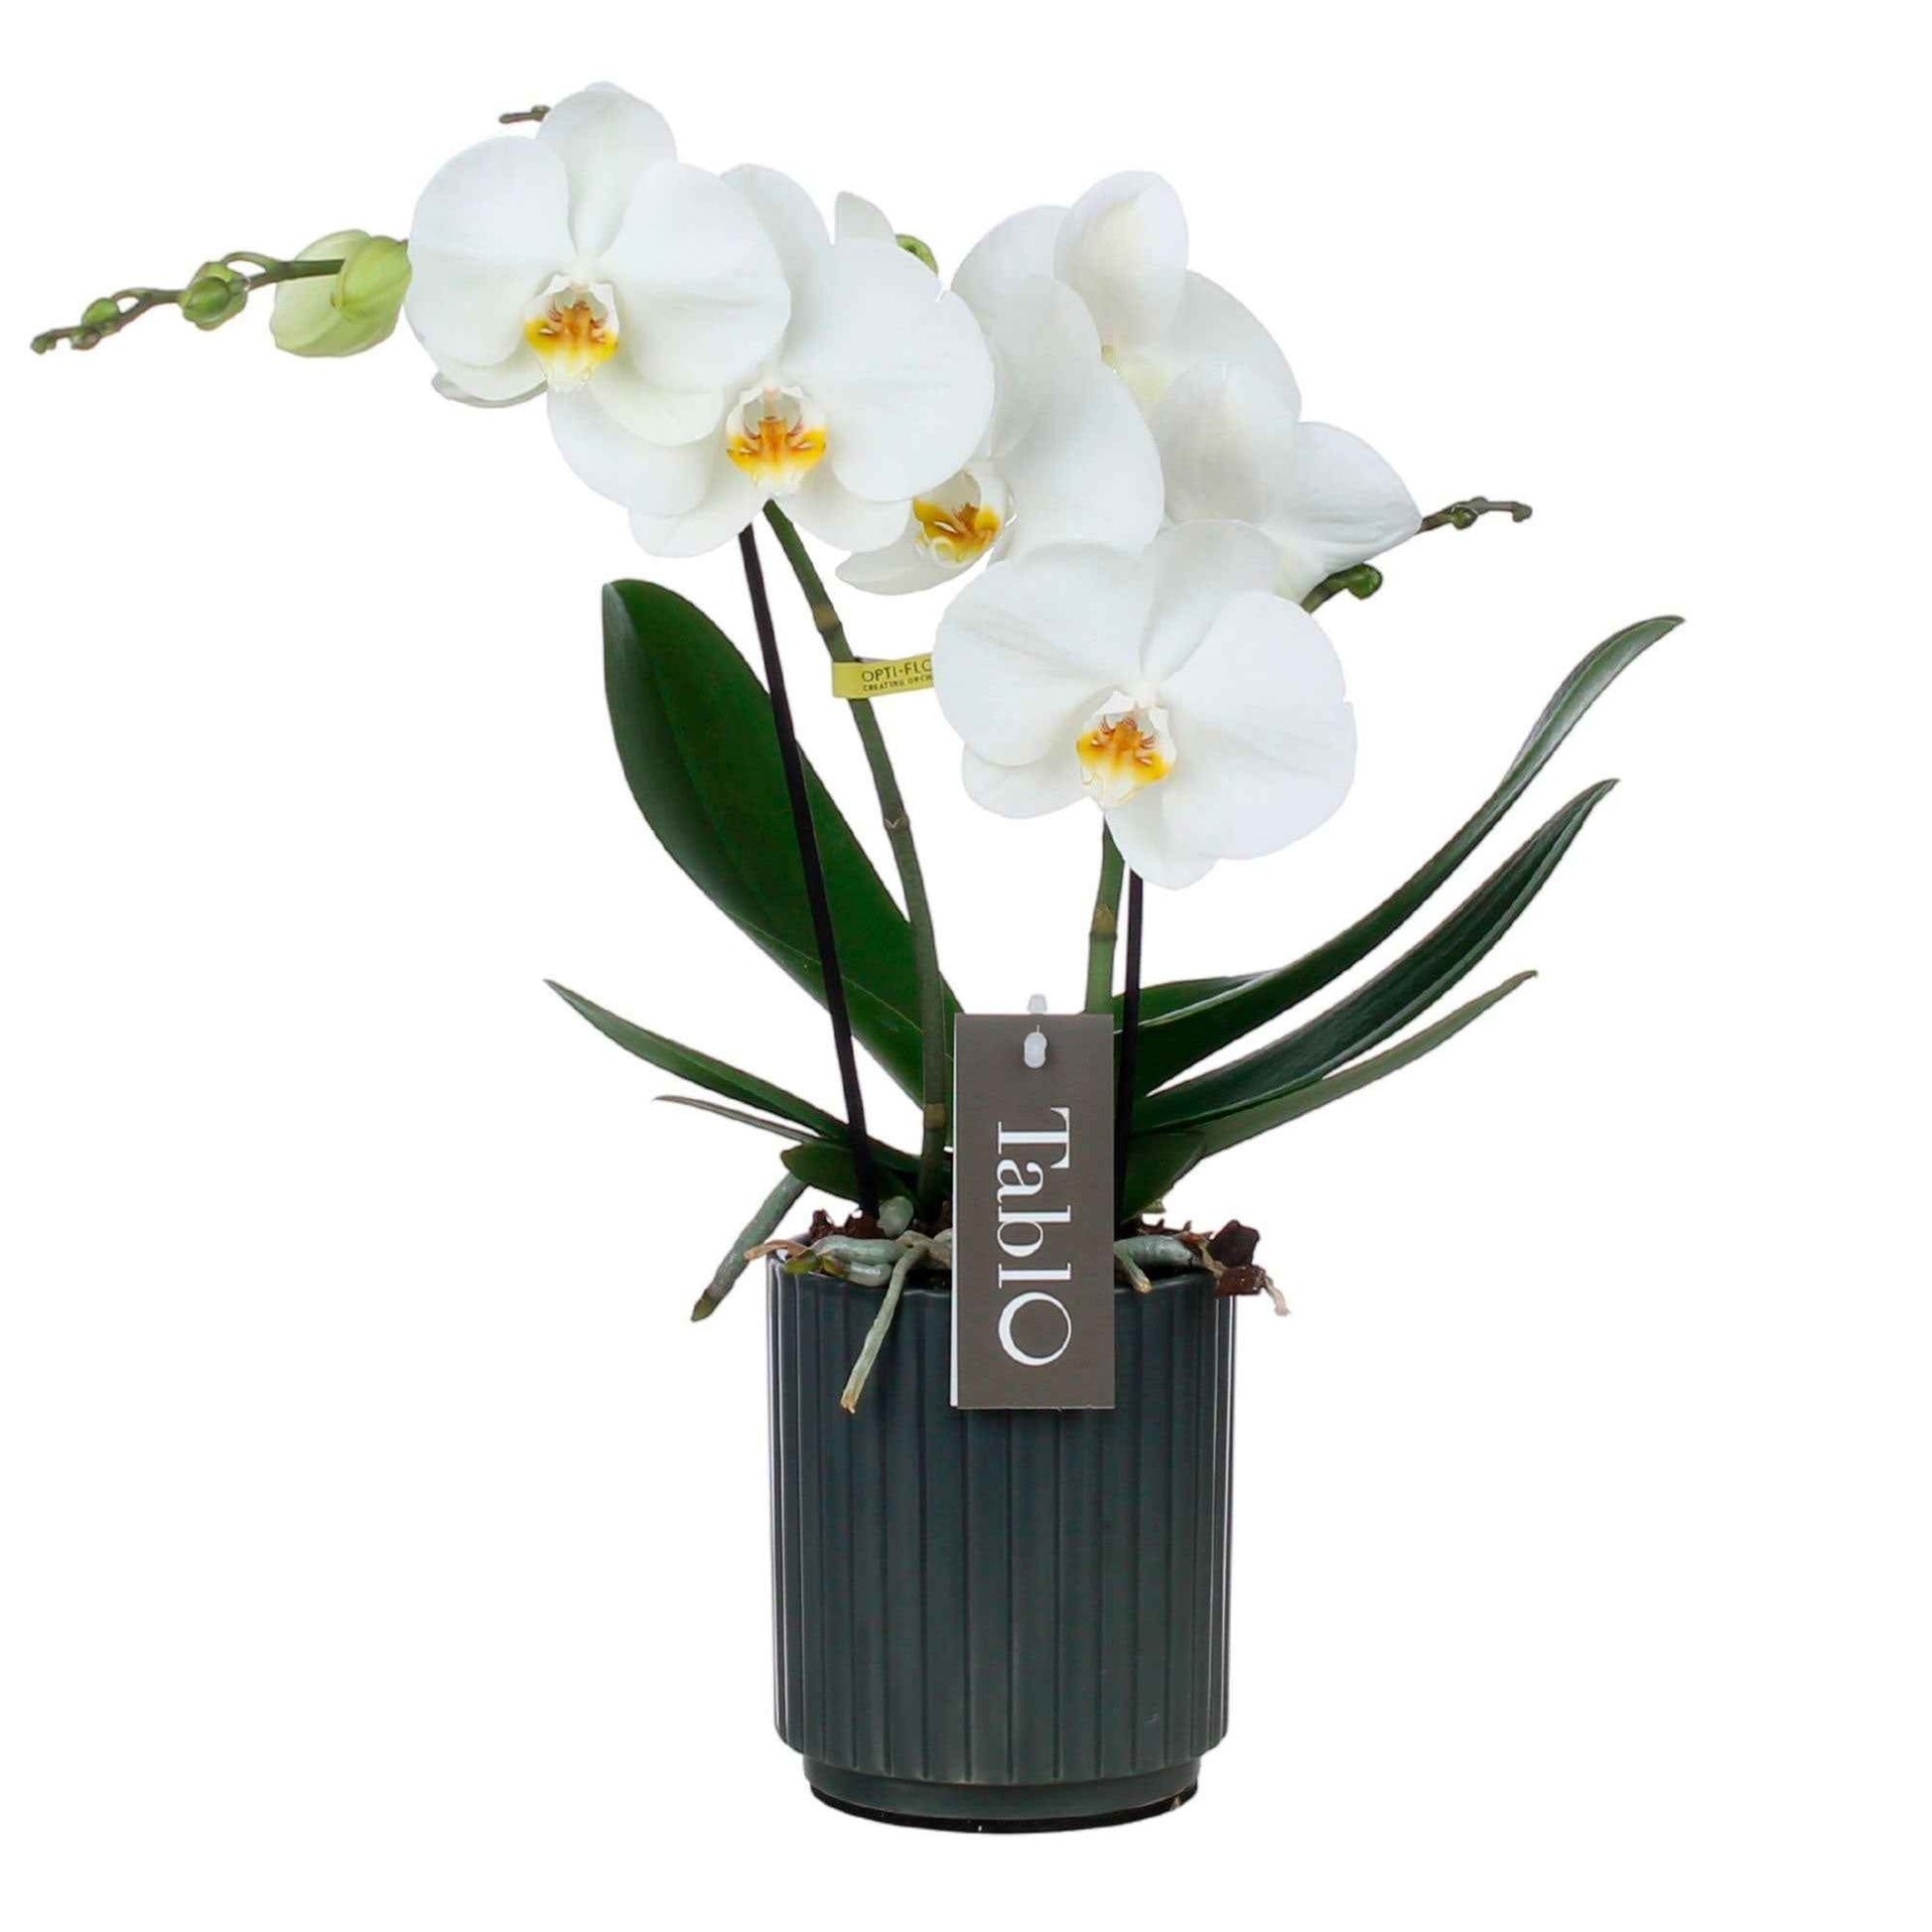 Vlinderorchidee Phalaenopsis Tablo Champagne Wit incl. sierpot - Diervriendelijke kamerplanten